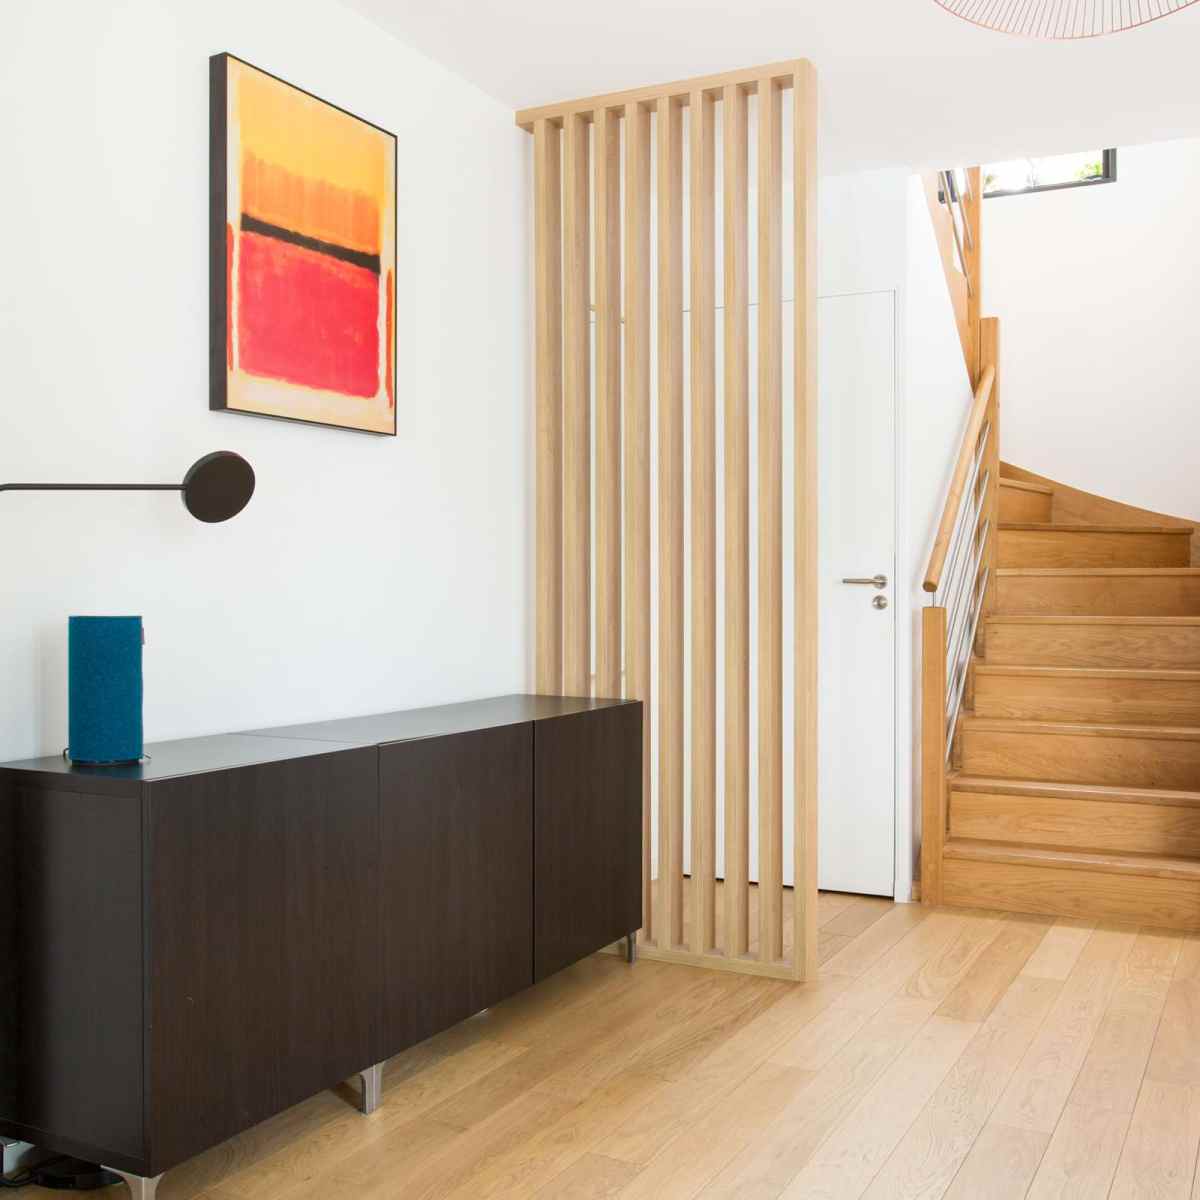 Ce claustra bois d'intérieur sur mesure permet de définir clairement l'entrée de cet appartement à Paris